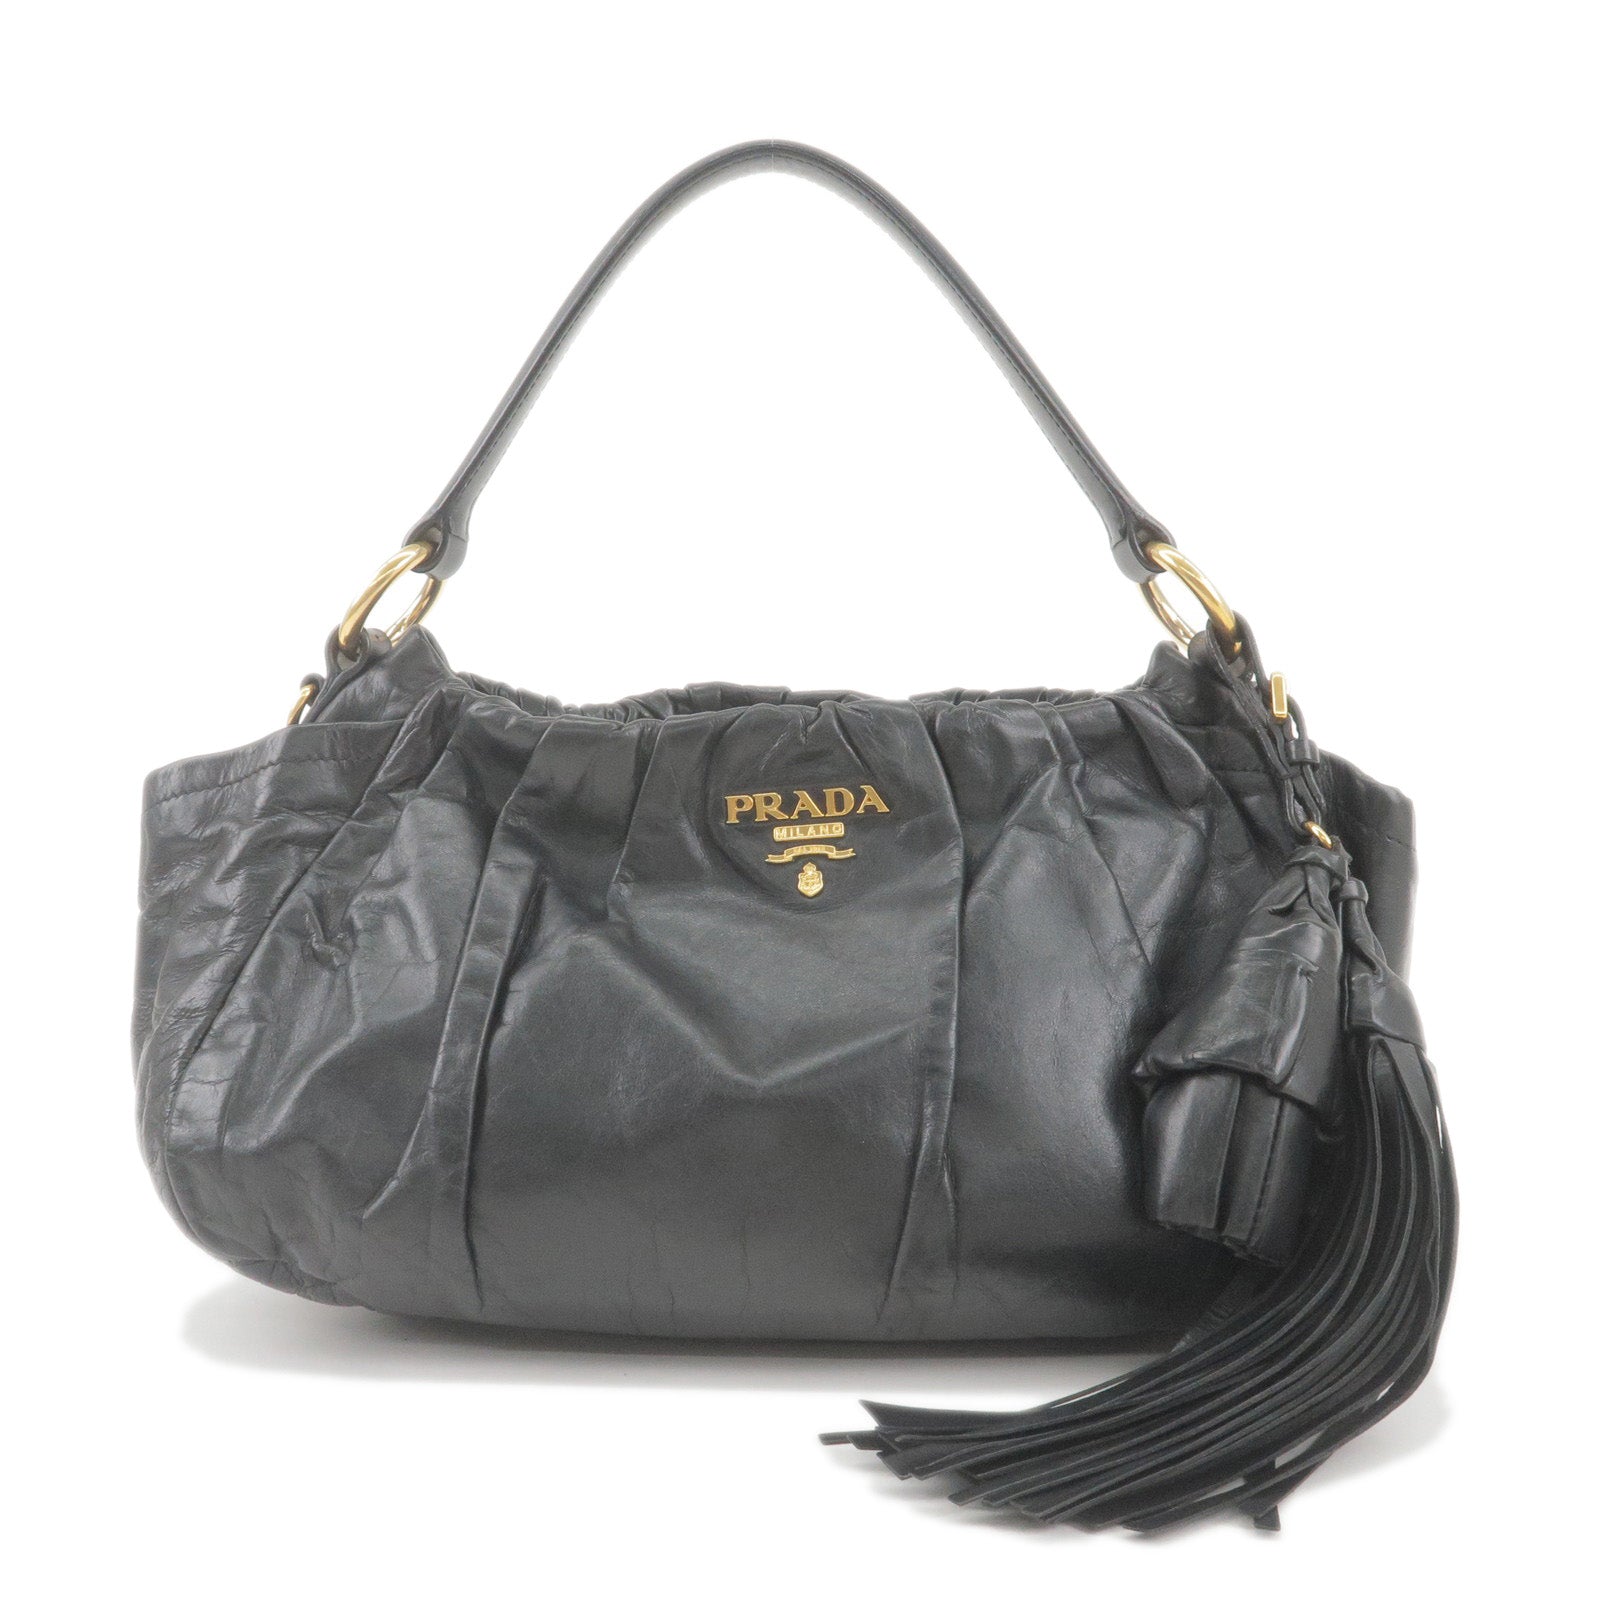 PRADA-Logo-Leather-Shoulder-Bag-With-Tassel-Black